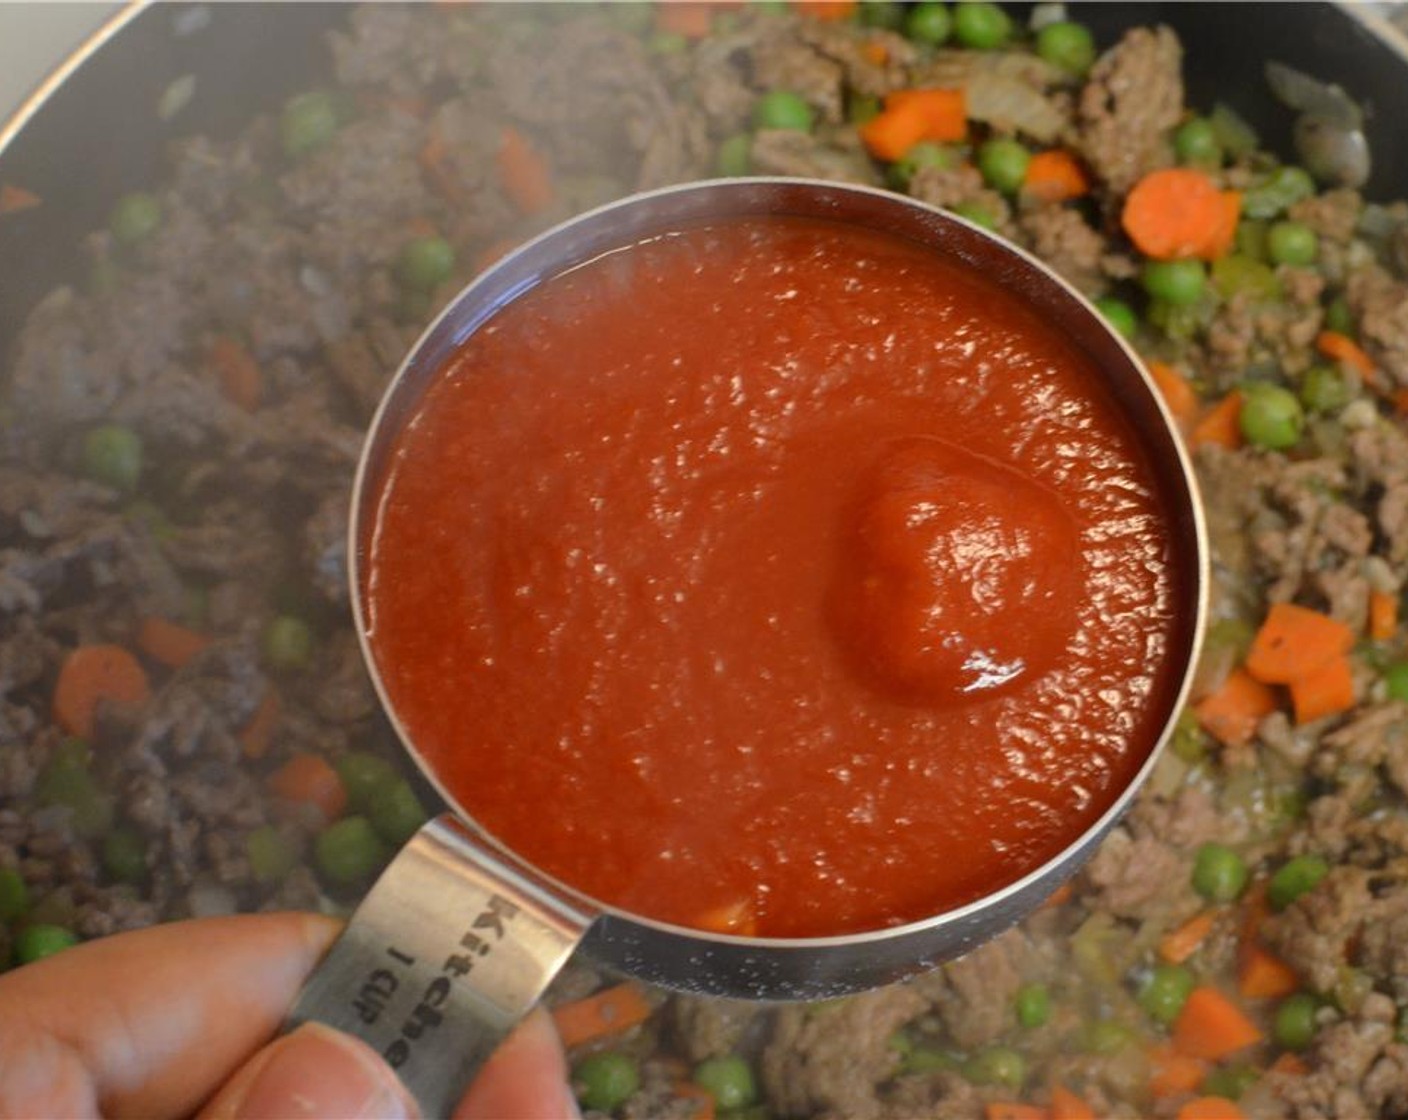 Schritt 7 Dann Tomatensauce (260 g) dazugeben, gut verrühren und zum Kochen bringen. Deckel aufsetzen, die Hitze reduzieren und die Sauce 10 Minuten köcheln lassen. Kurz vor Ende frisch gehackte Petersilie (1 Handvoll) unterrühren, dann Herd ausschalten.